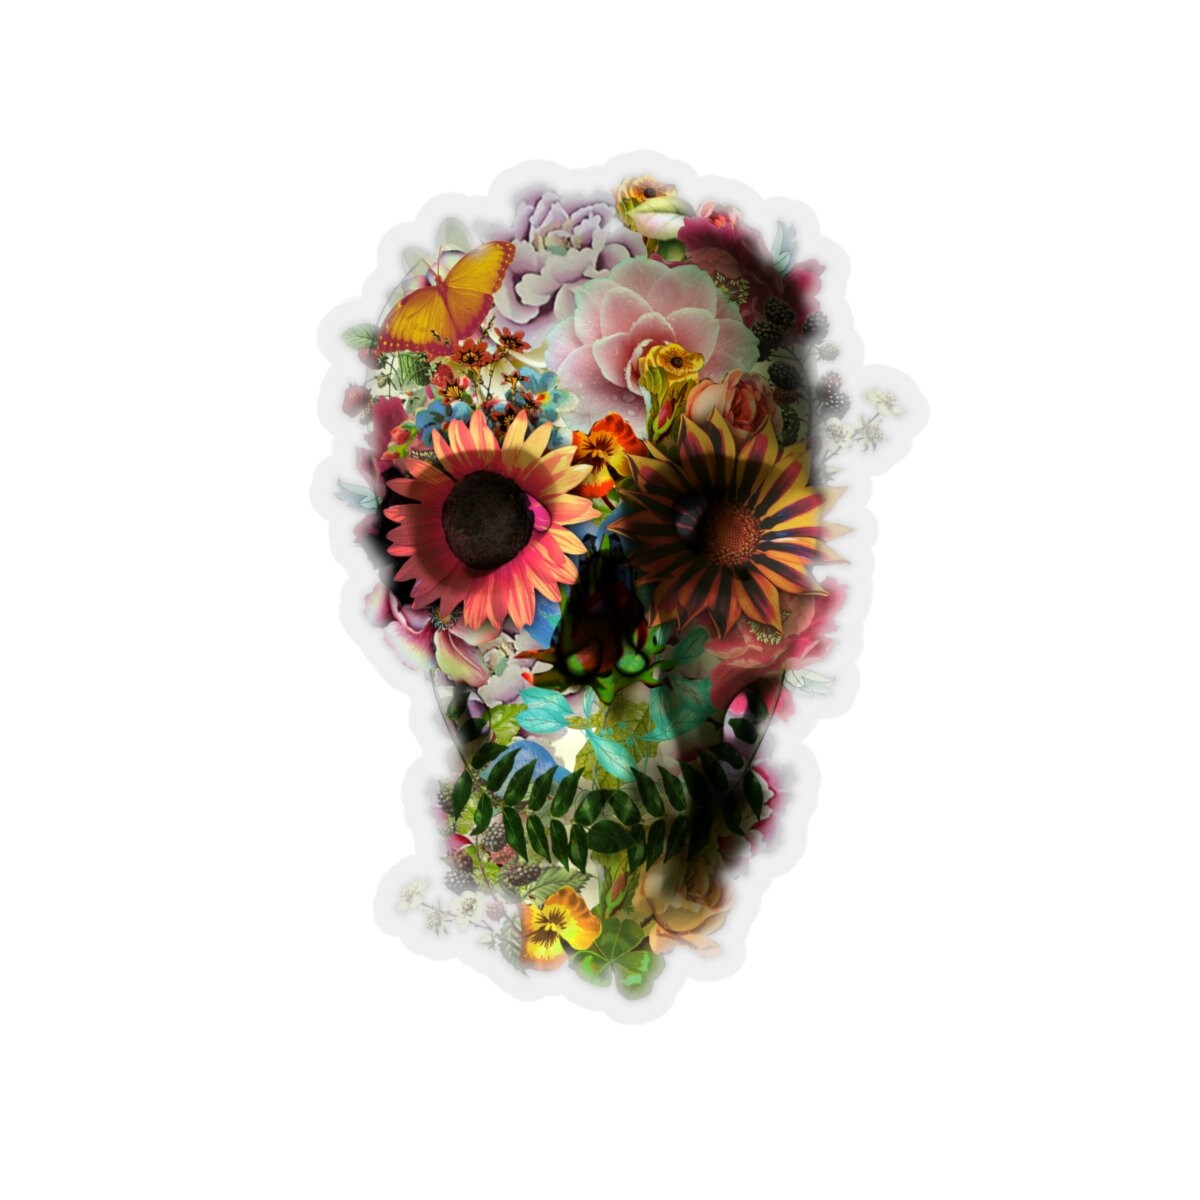 Flower Skull Sticker, Floral Skull Laptop Sticker, Sugar Skull Bubble-free Sticker, Nature Gothic Sugar Skull Art Print Sticker